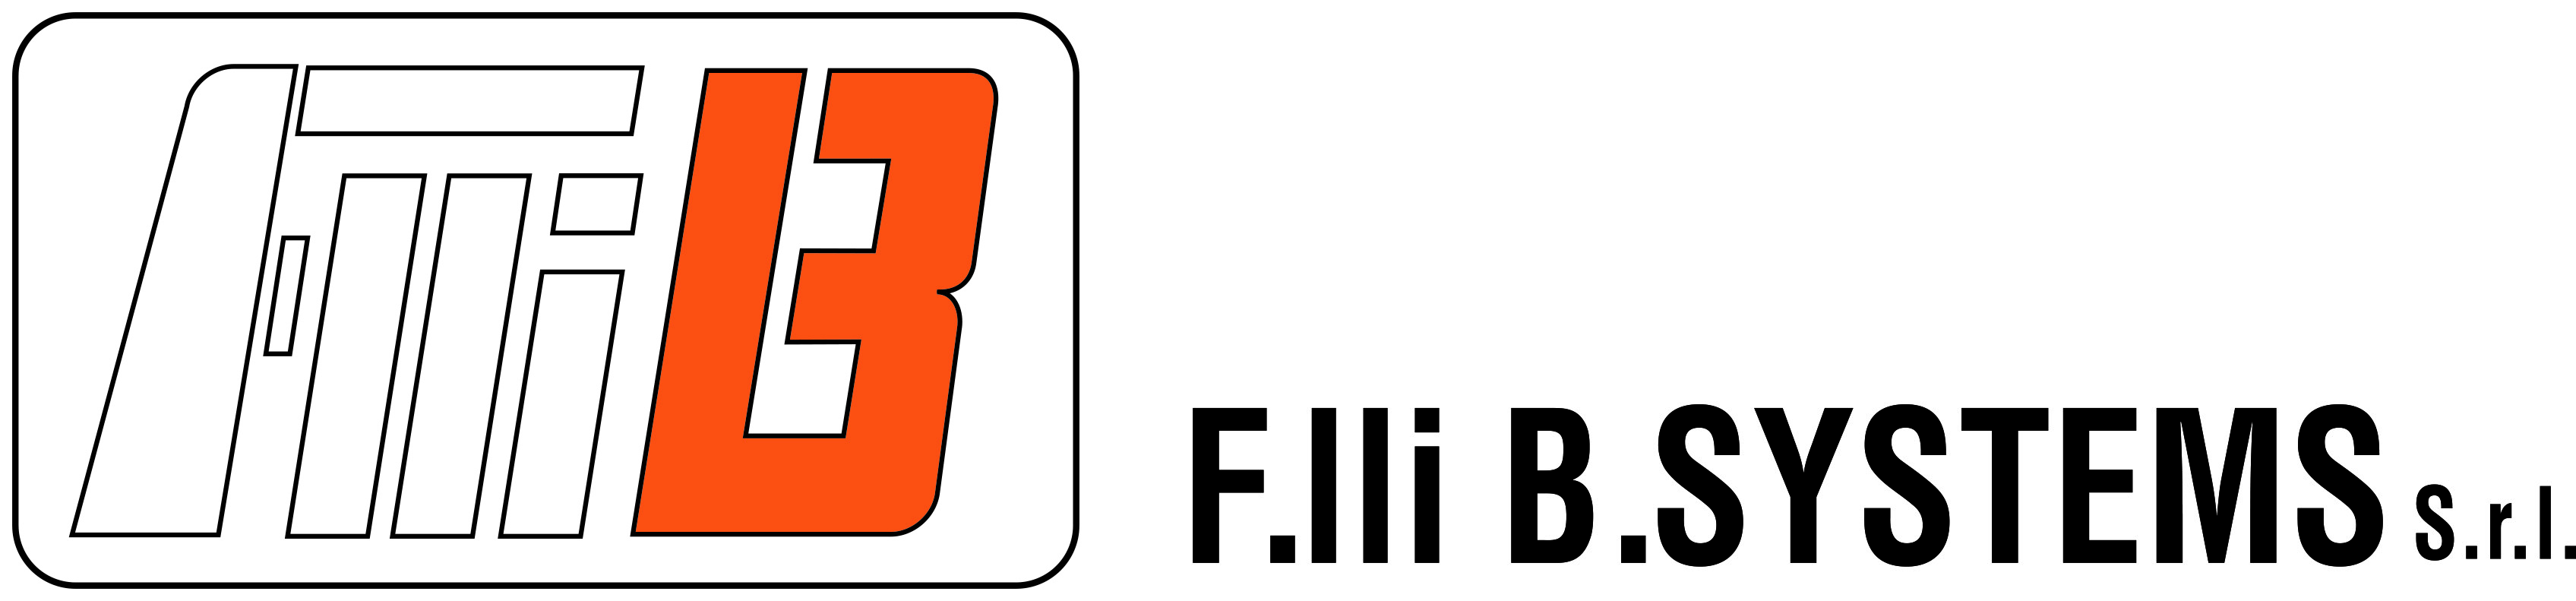 logo b.system